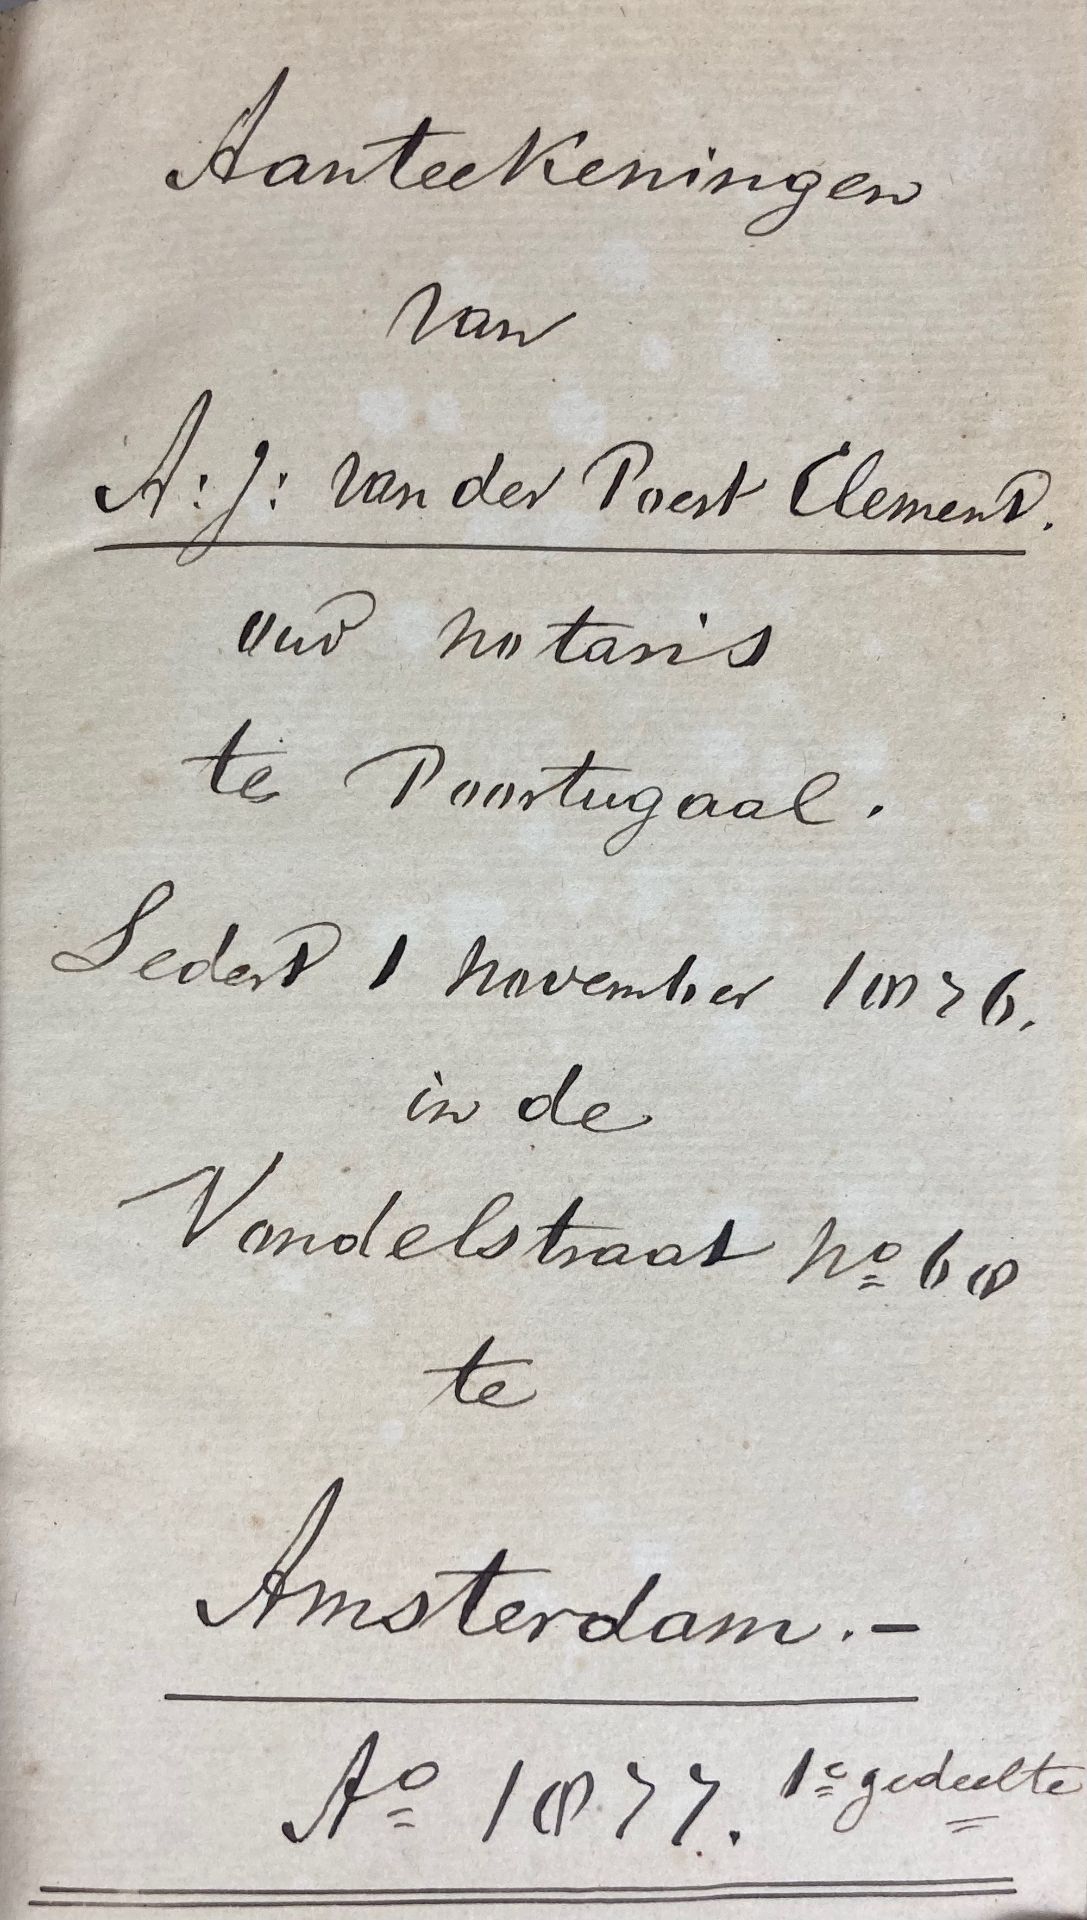 POORTUGAAL -- "AANTEEKENINGEN van A.J. van der Poest Clement, oud notaris te Poortugaal